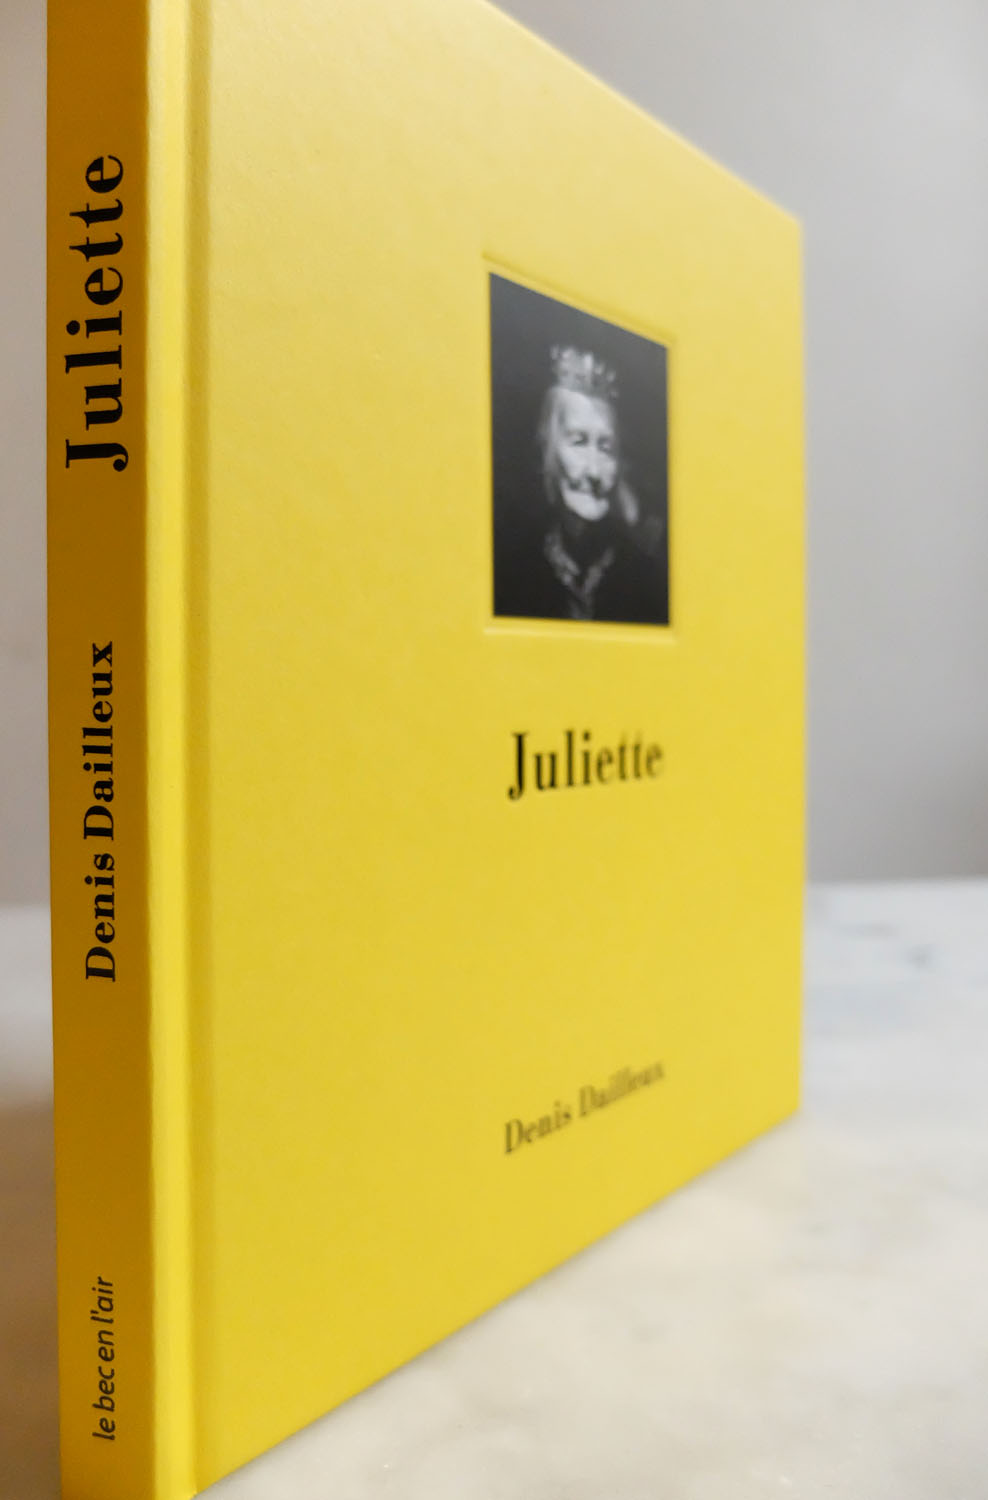 Juliette de Denis Dailleux